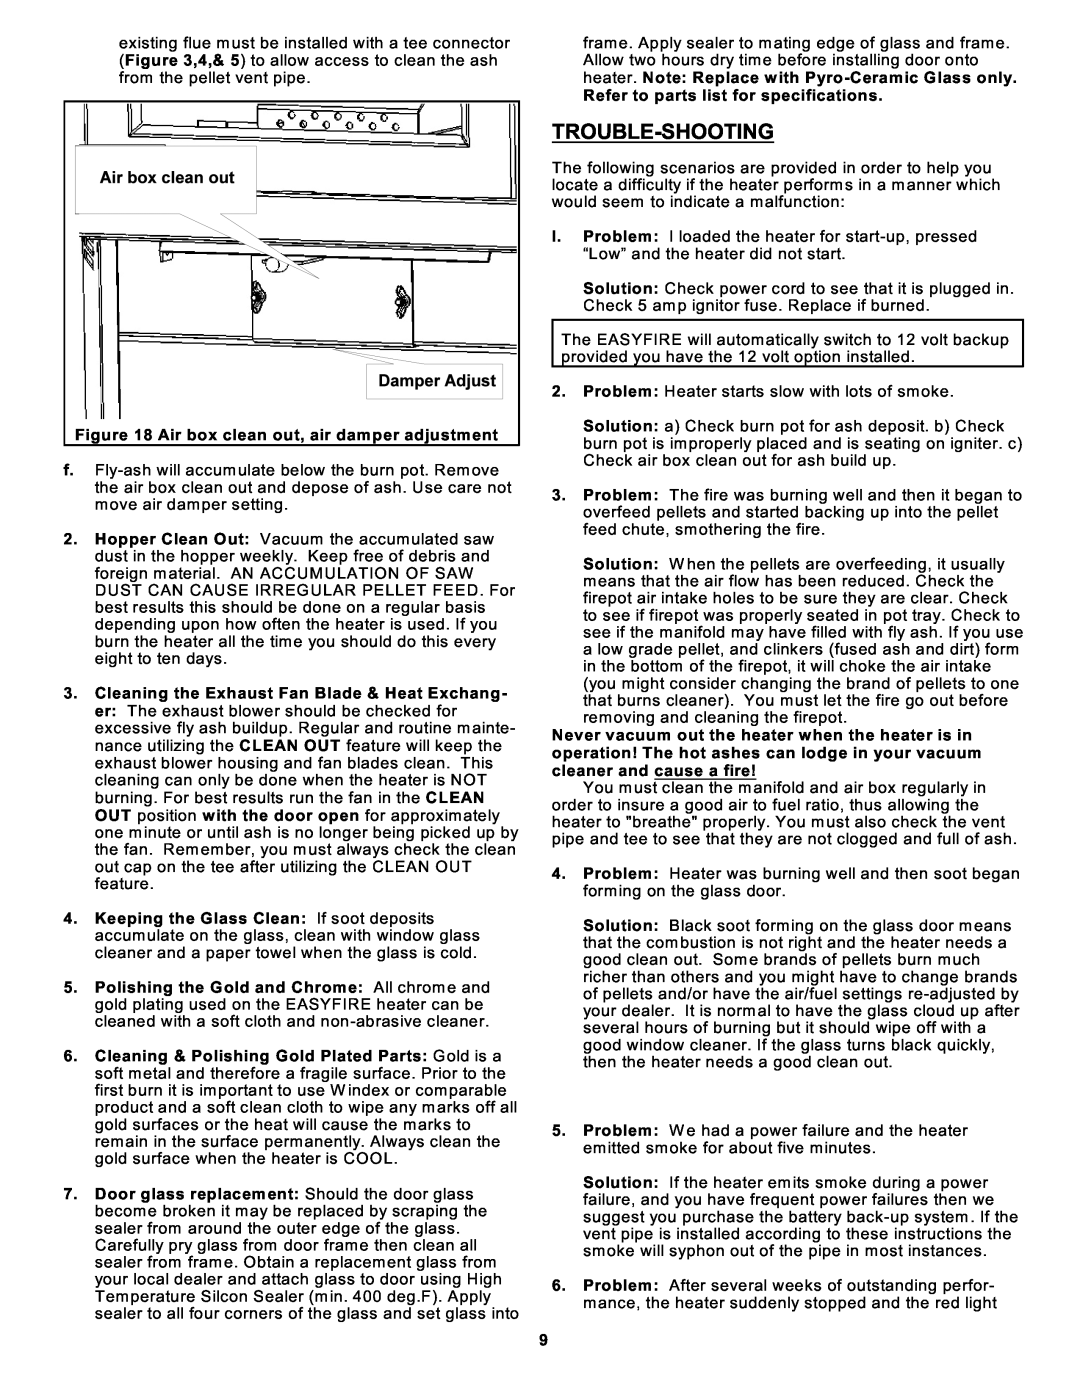 Sierra Products EF5001U owner manual Trouble-Shooting 